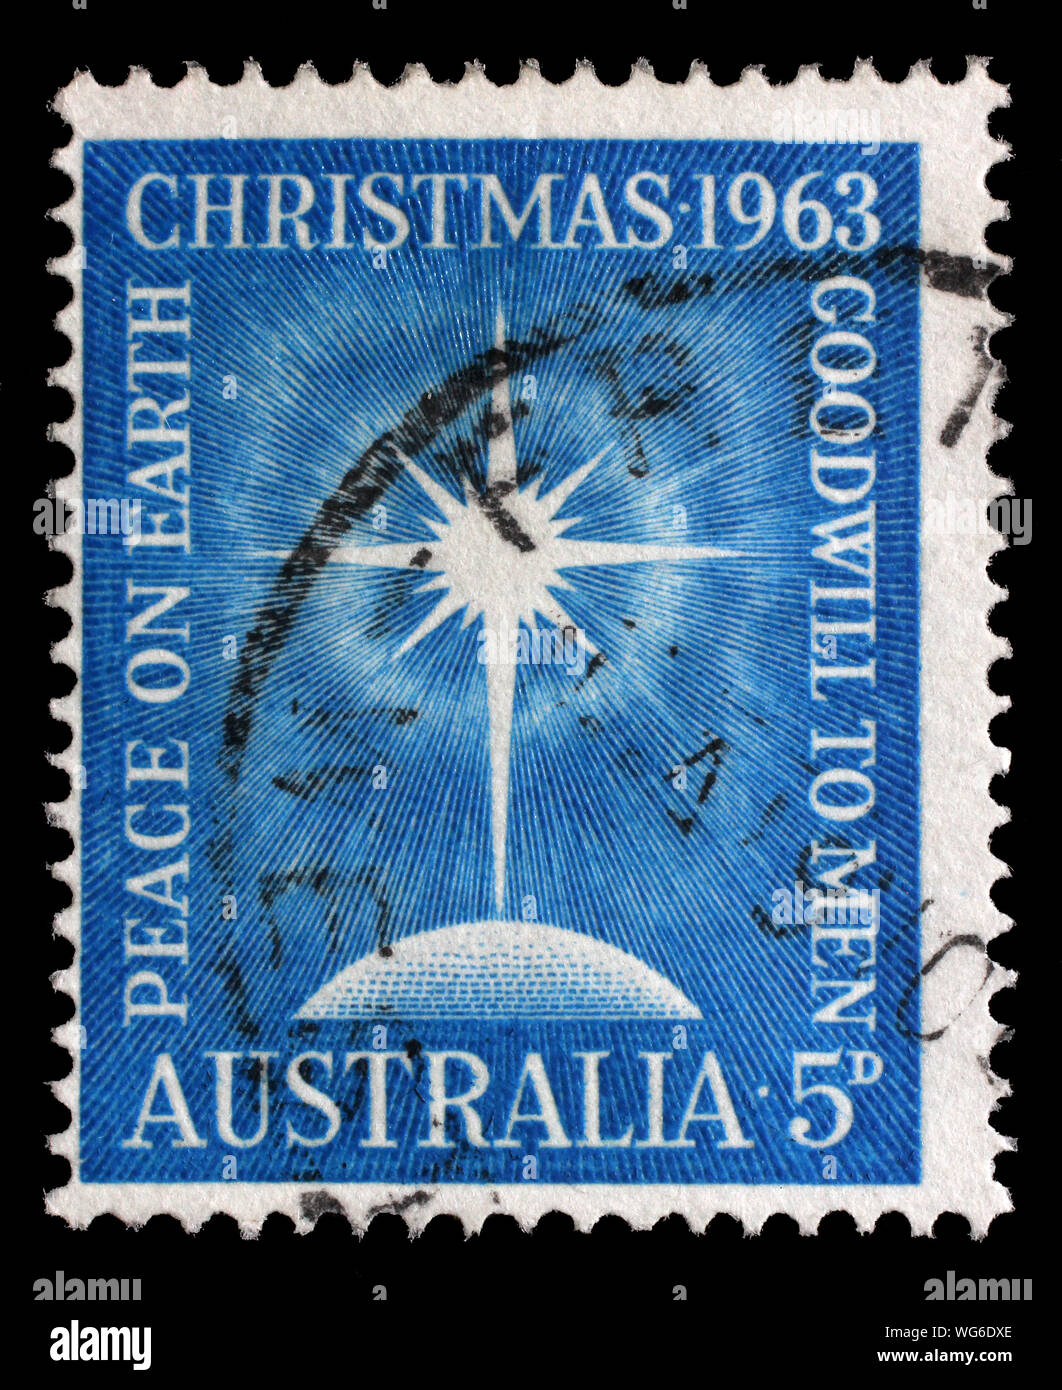 Weihnachten Stempel in Australien gedruckten zeigt Bright Star, Globus, Aufschrift "Frieden auf Erden", "Geschäfts- oder Firmenwert, der Männer', circa 1963. Stockfoto